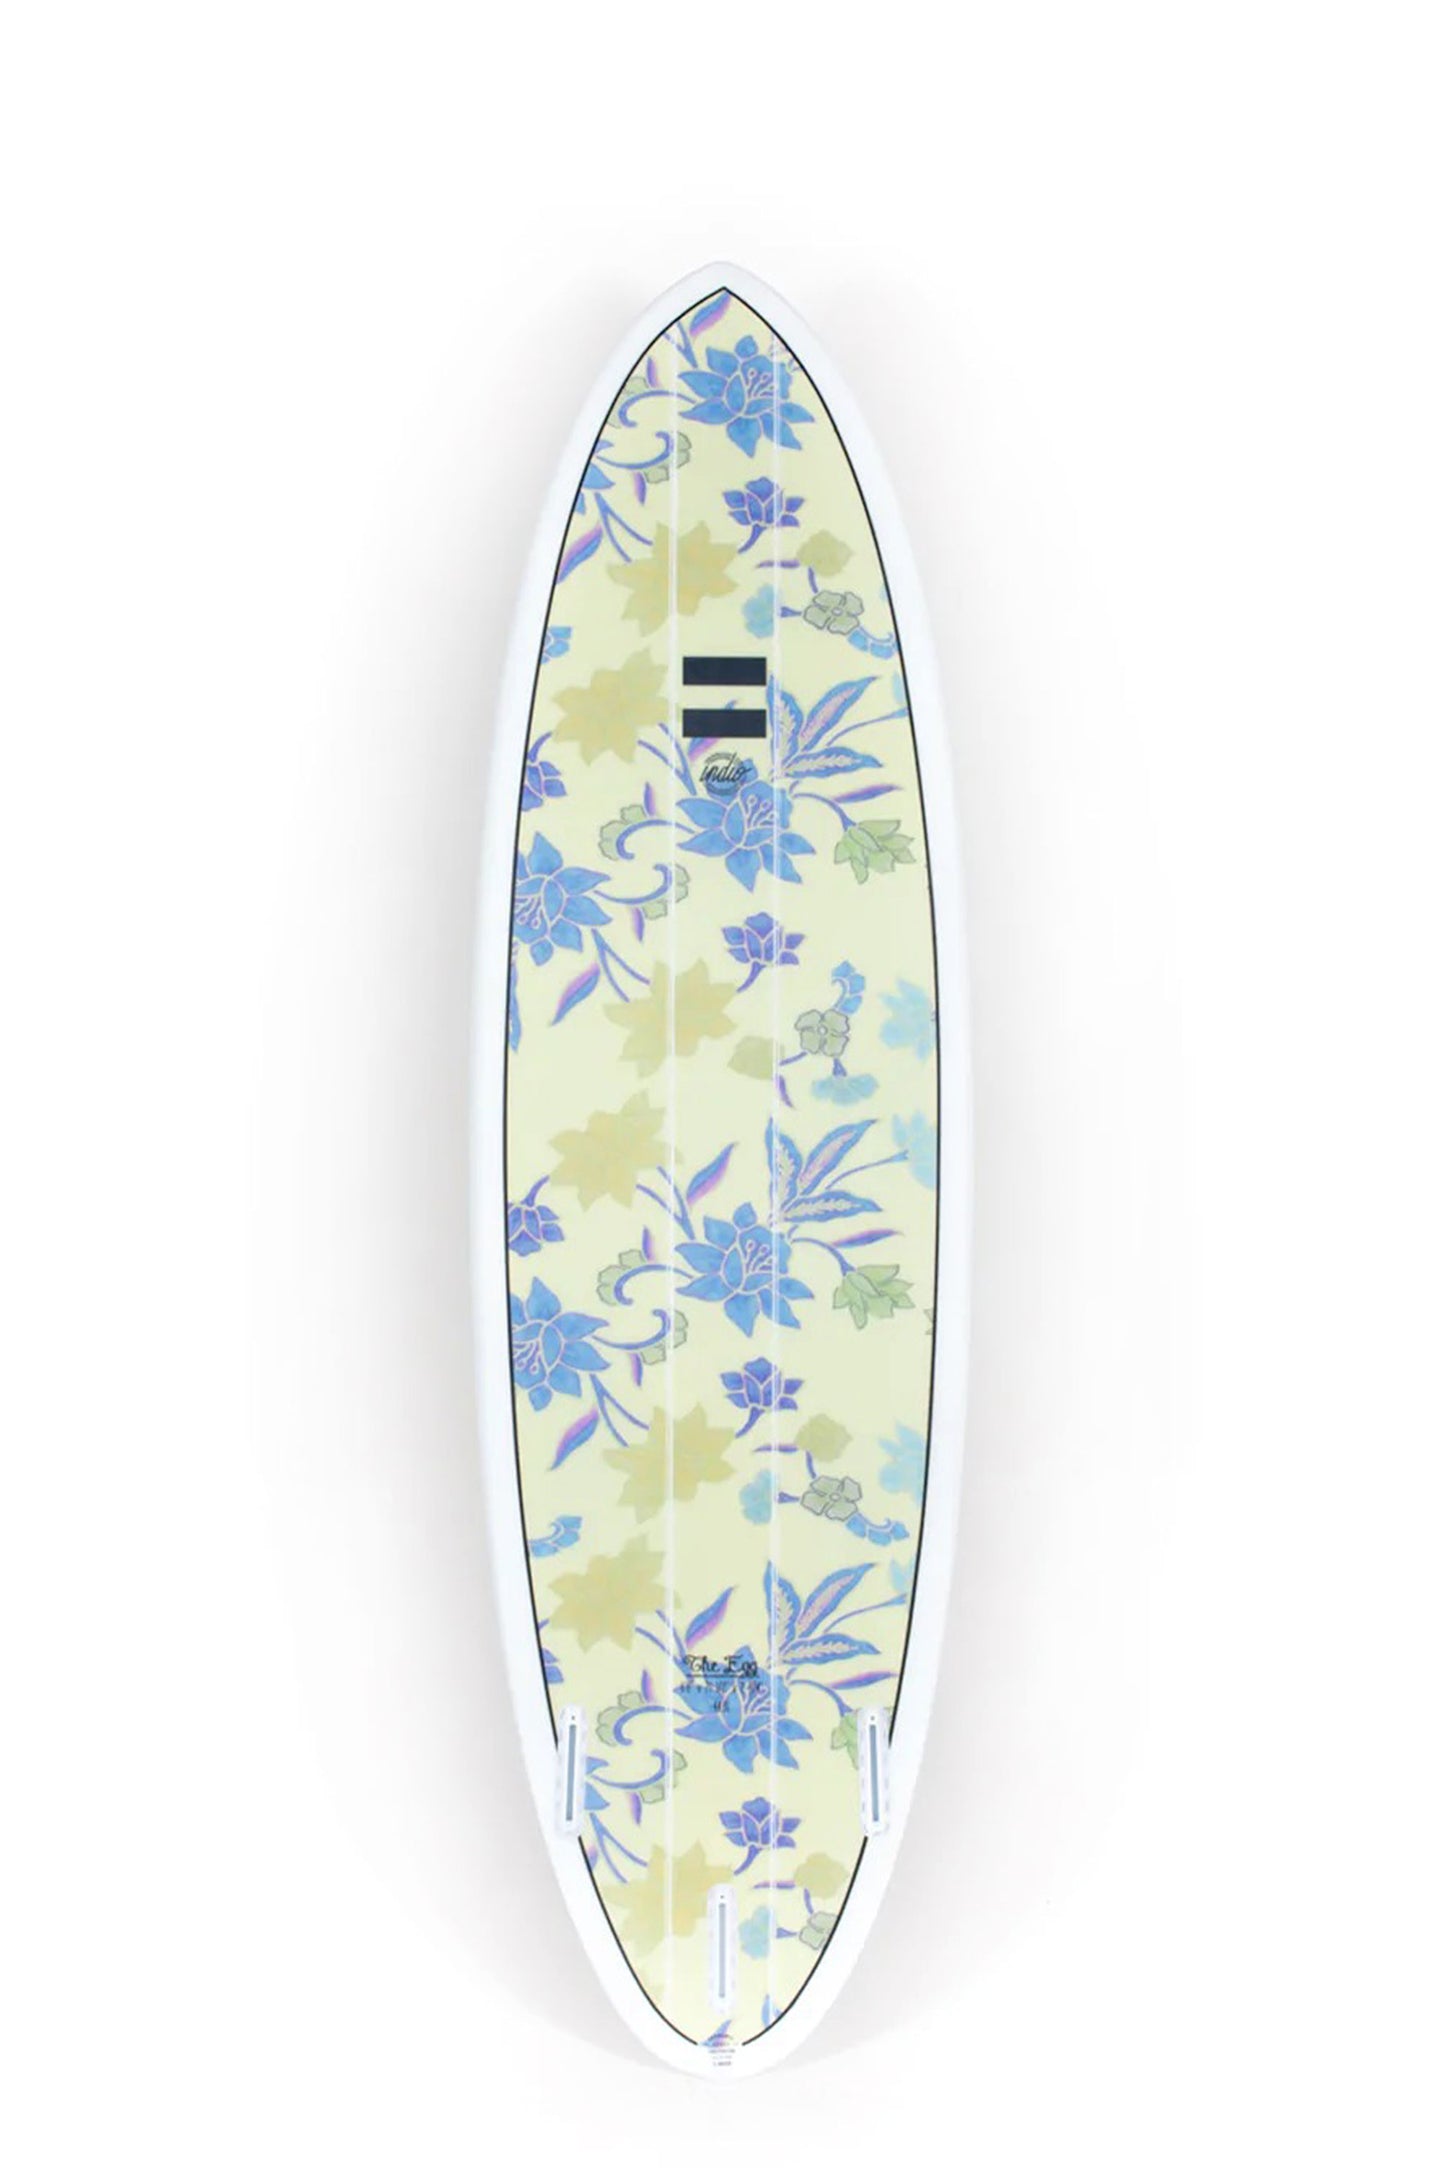 Pukas Surf Shop - Indio Endurance - THE EGG Flowers - 7´10" x 23 1/4 x 3 - 64L